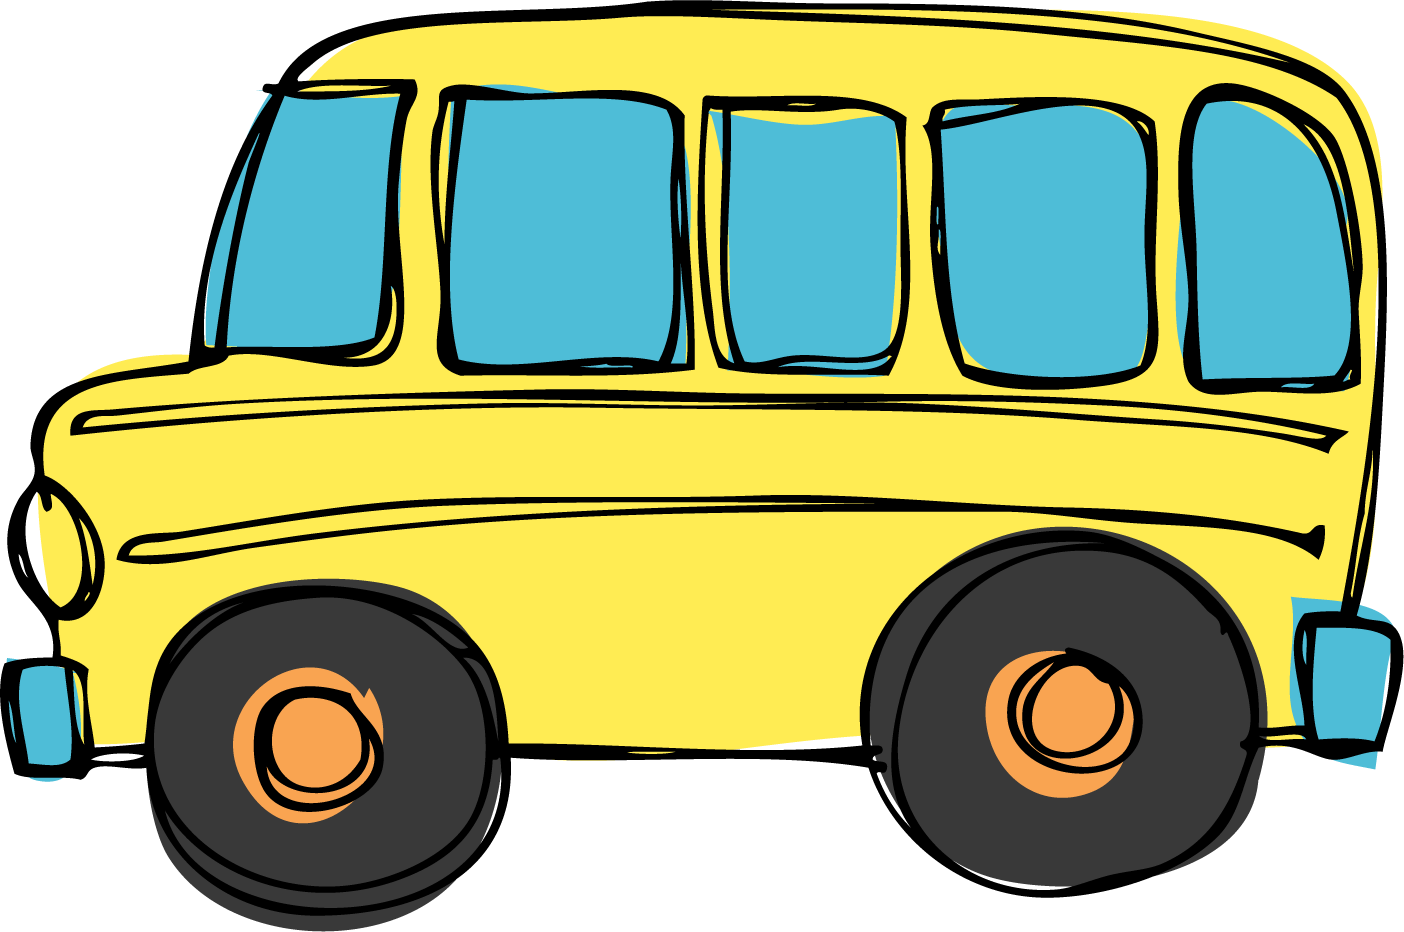 School bus clipart images